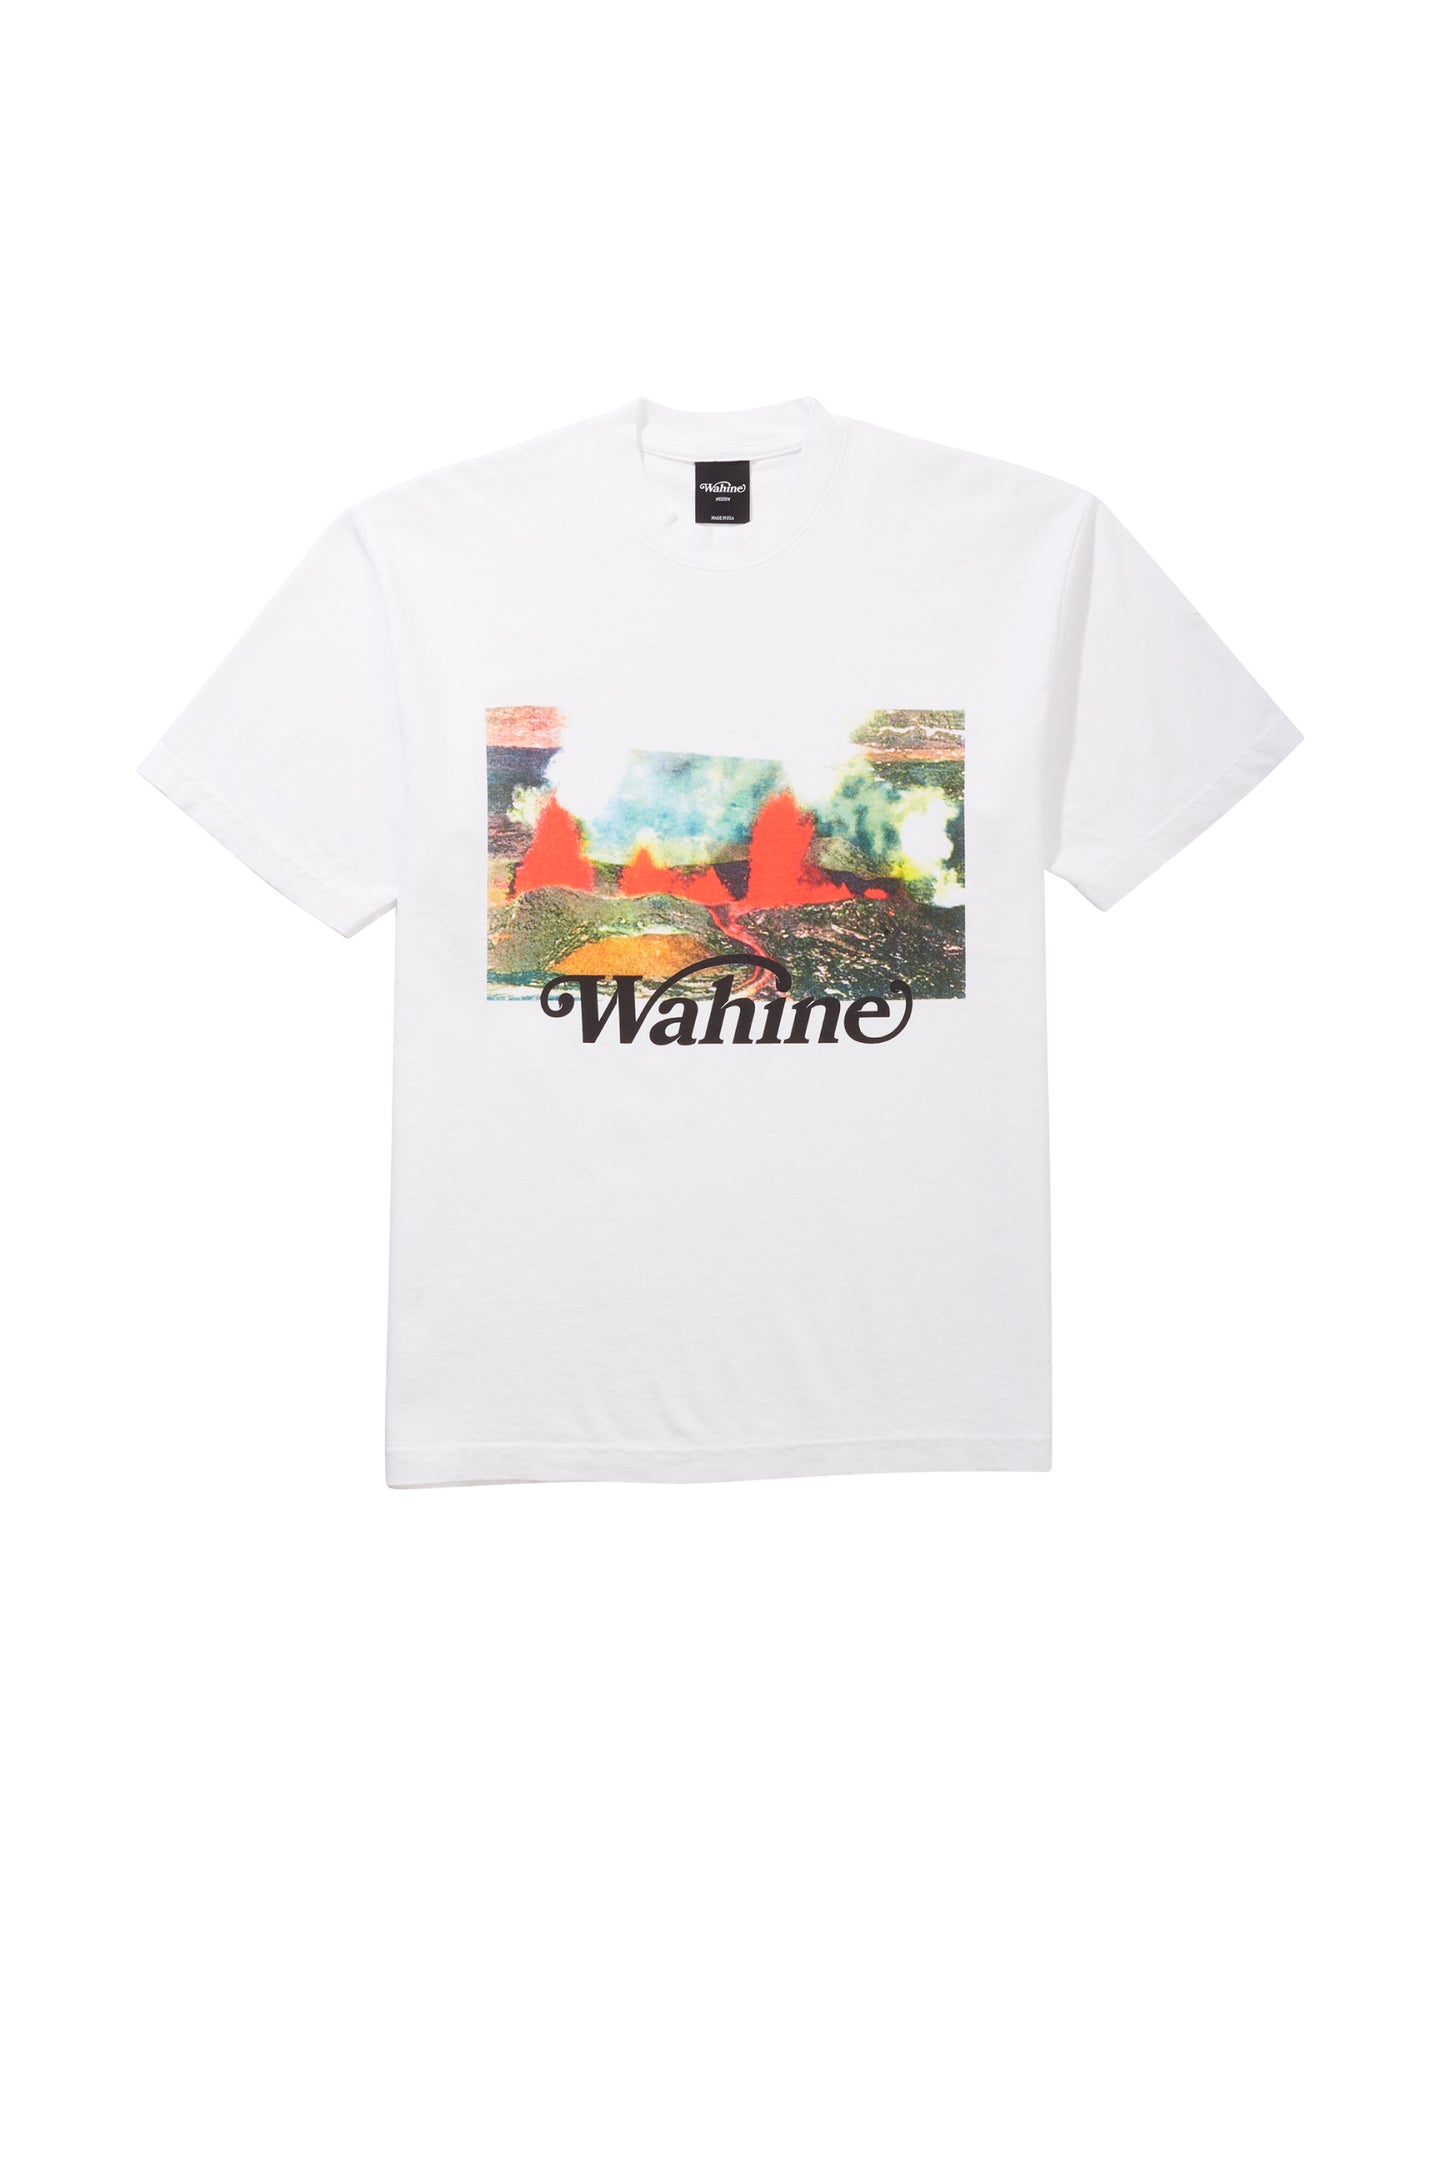 Mauna Loa T-Shirt